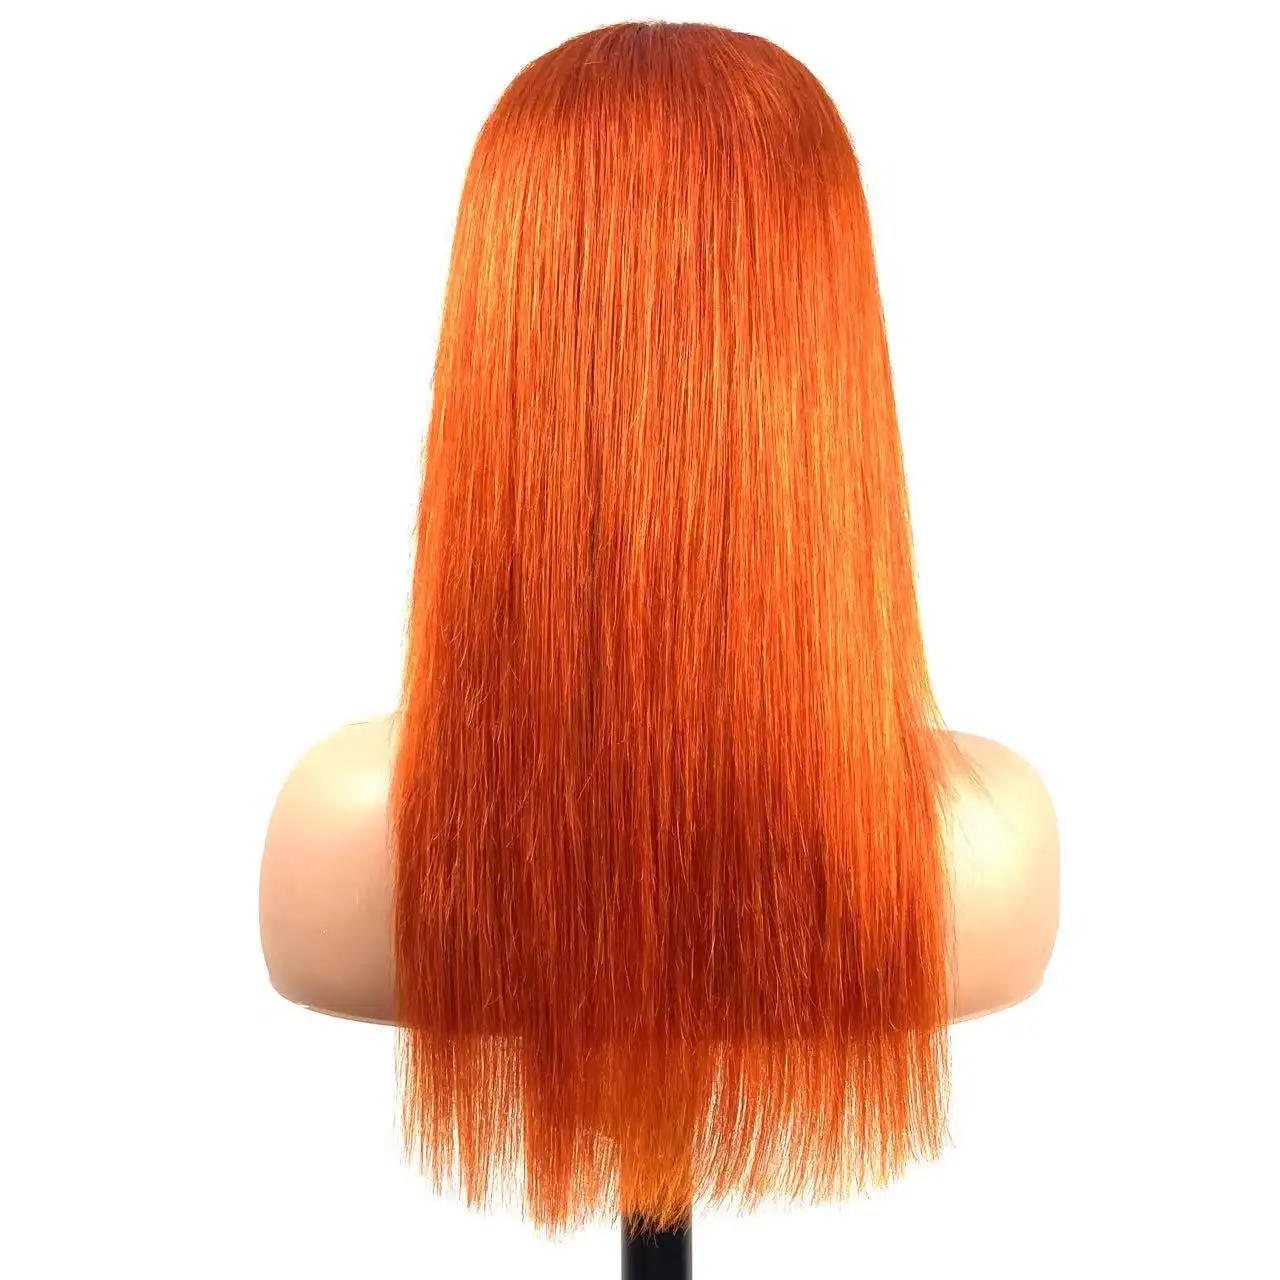 Wig rambut manusia berwarna, Wig depan renda Hd, Wig jahe oranye merah ungu rambut manusia renda depan untuk WANITA HITAM